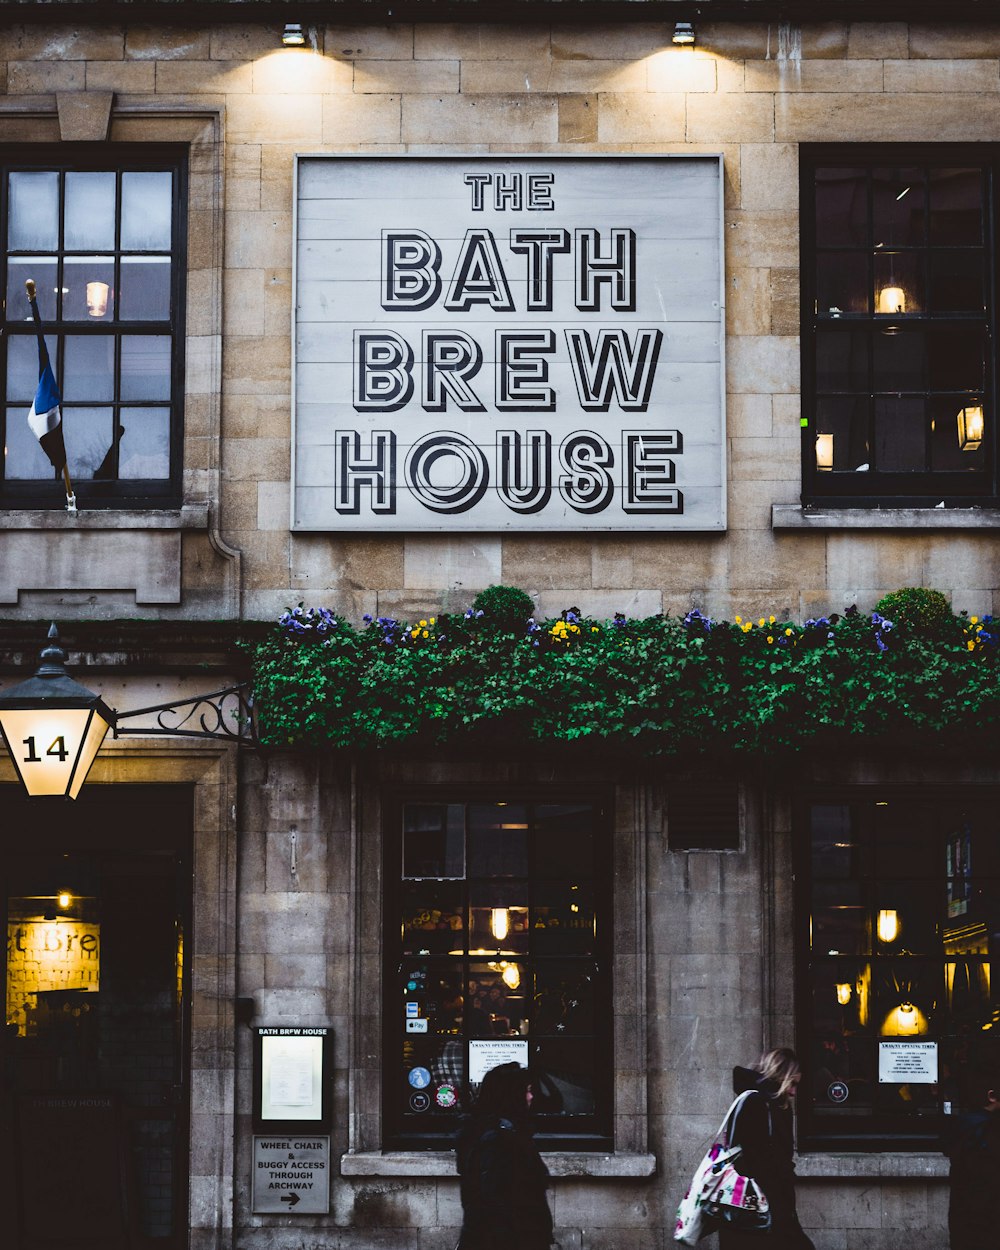 Señalización de The Bath Brew House